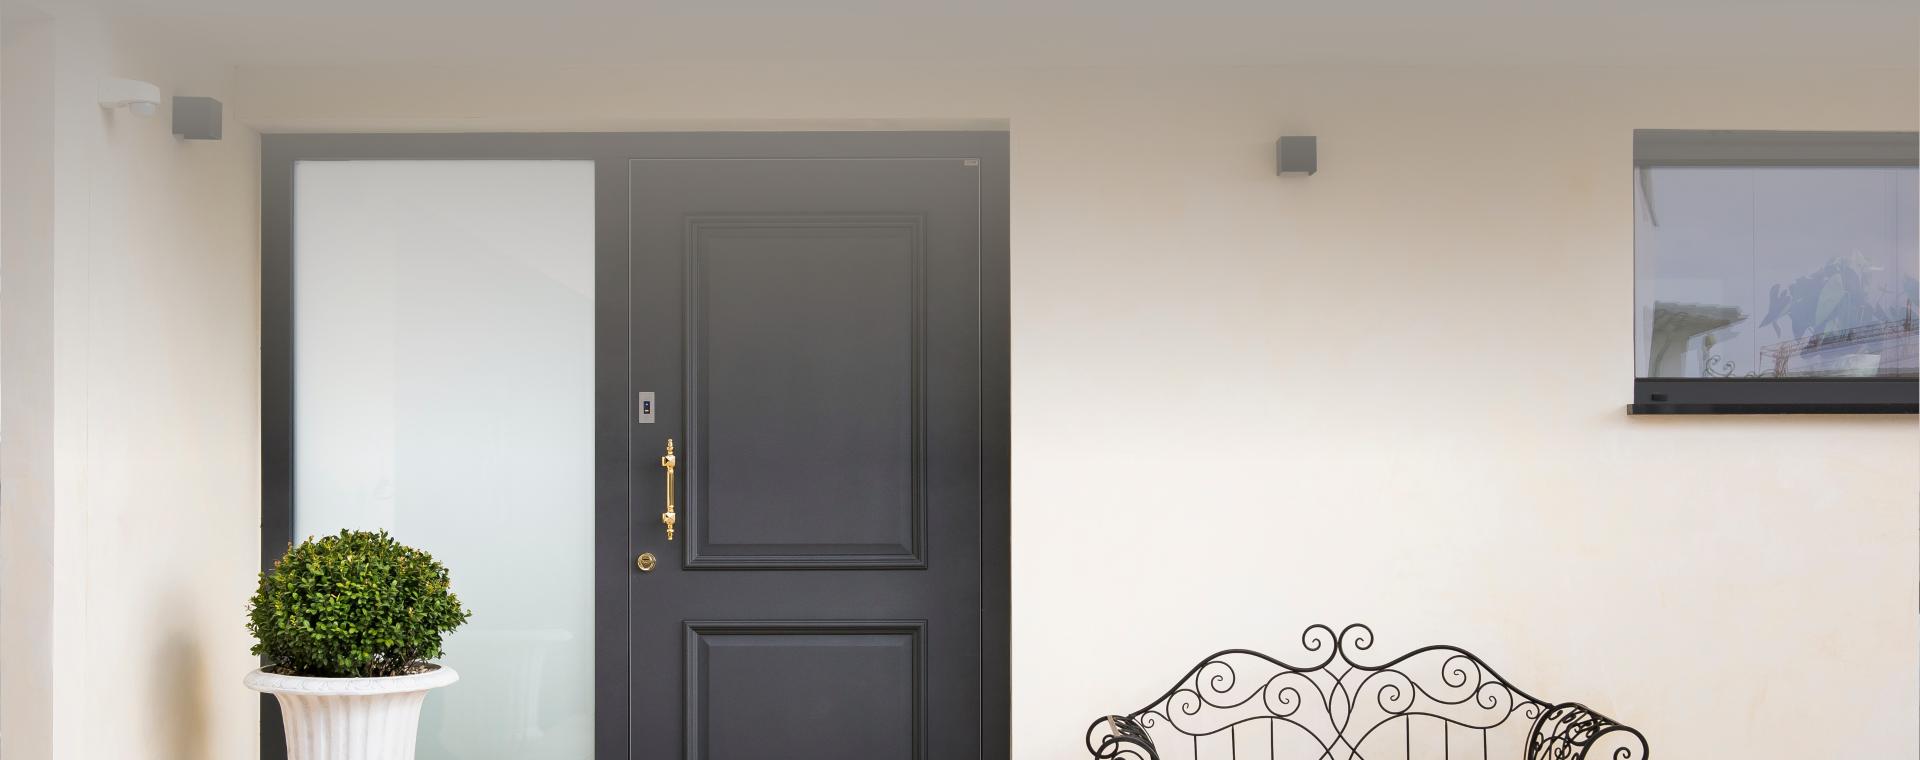 Moderne Haustür von Comtür mit vergoldetem Griff